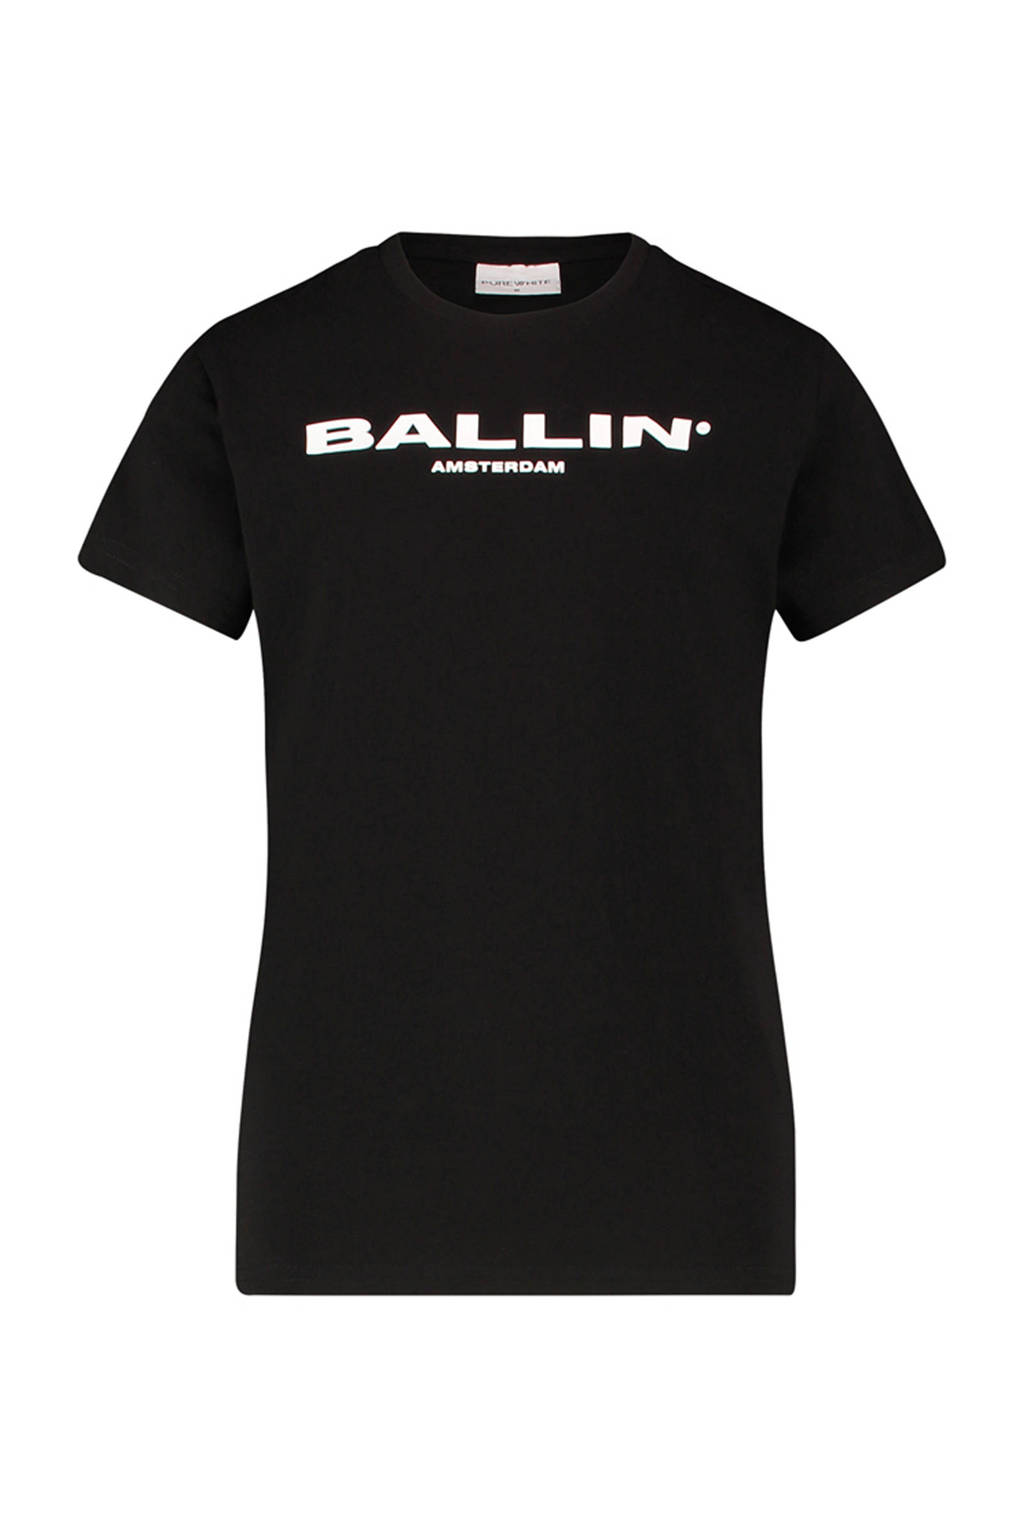 Aandringen Incarijk Verschuiving Ballin unisex T-shirt met tekst zwart/wit | kleertjes.com